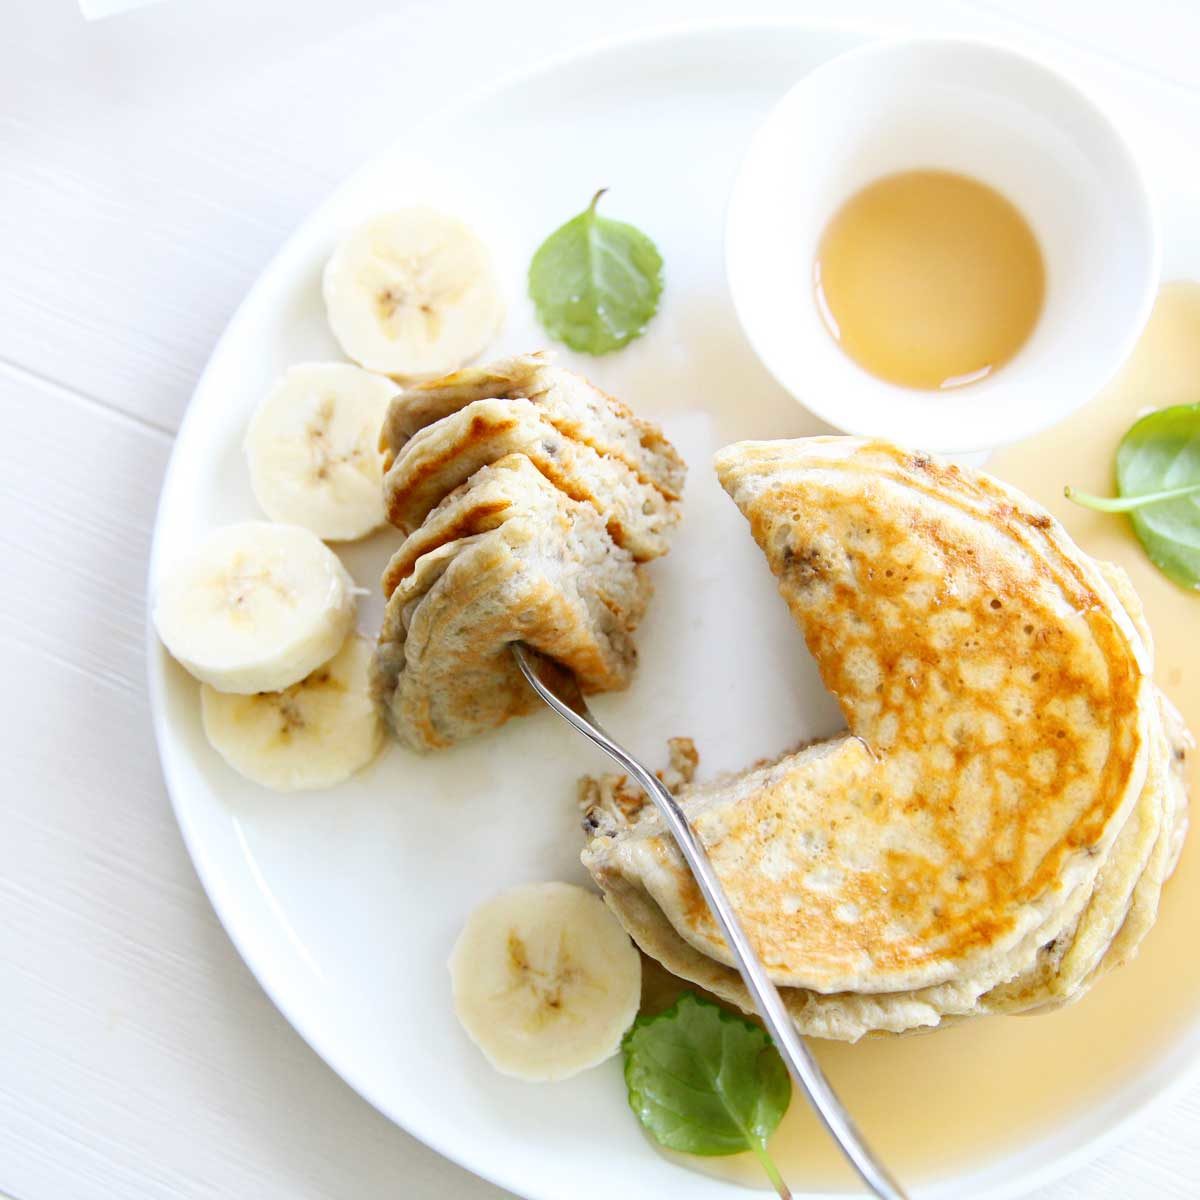 4 ingredient banana mochi pancakes